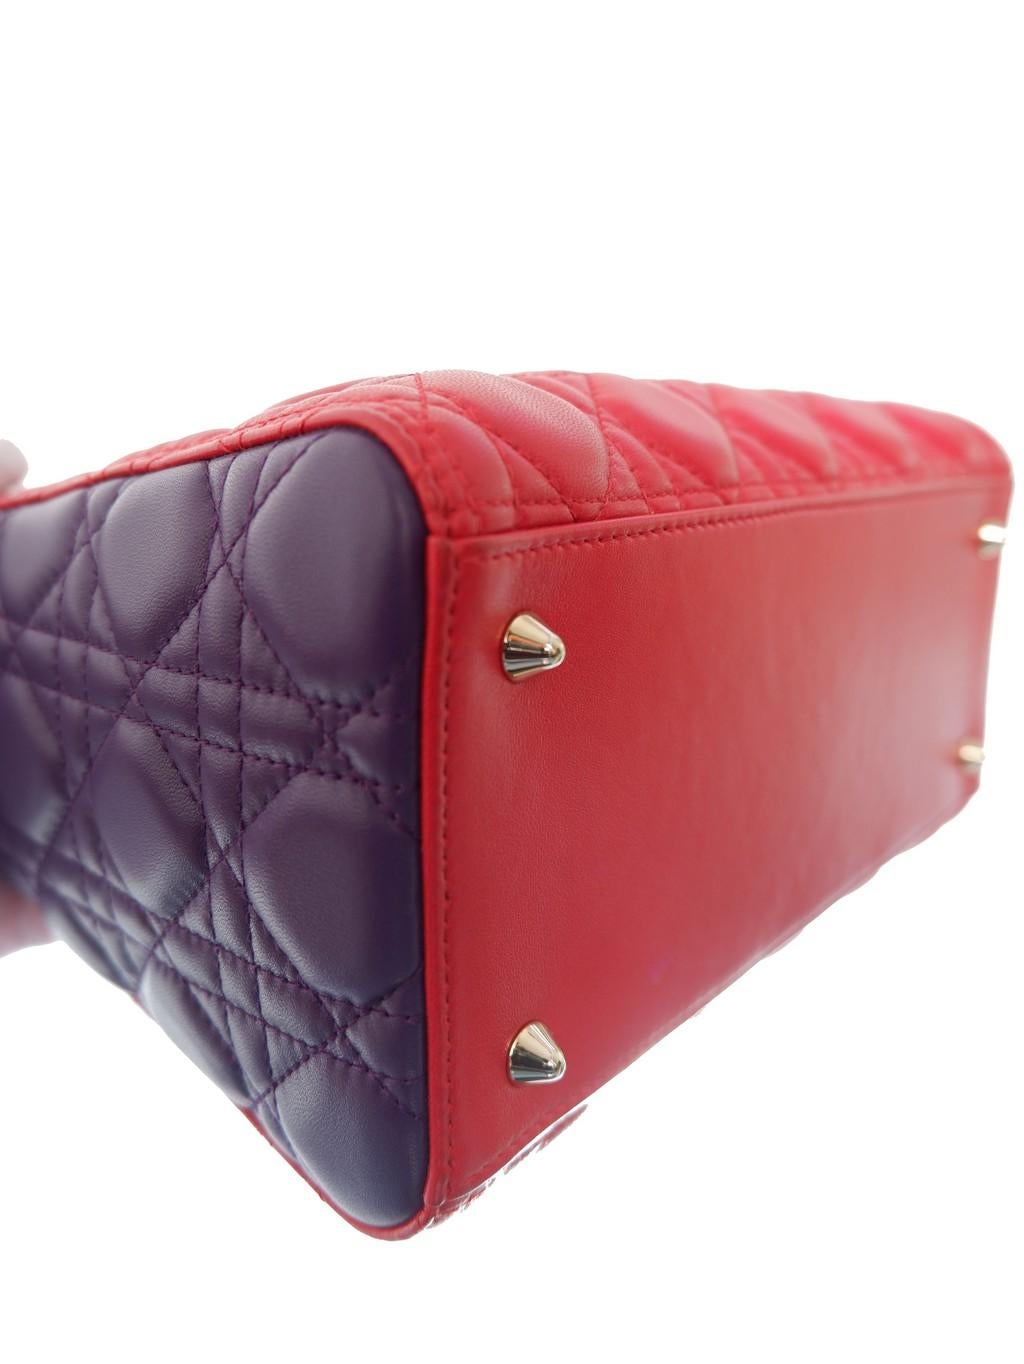 Women's Dior Multicolor Cannage Medium Handbag